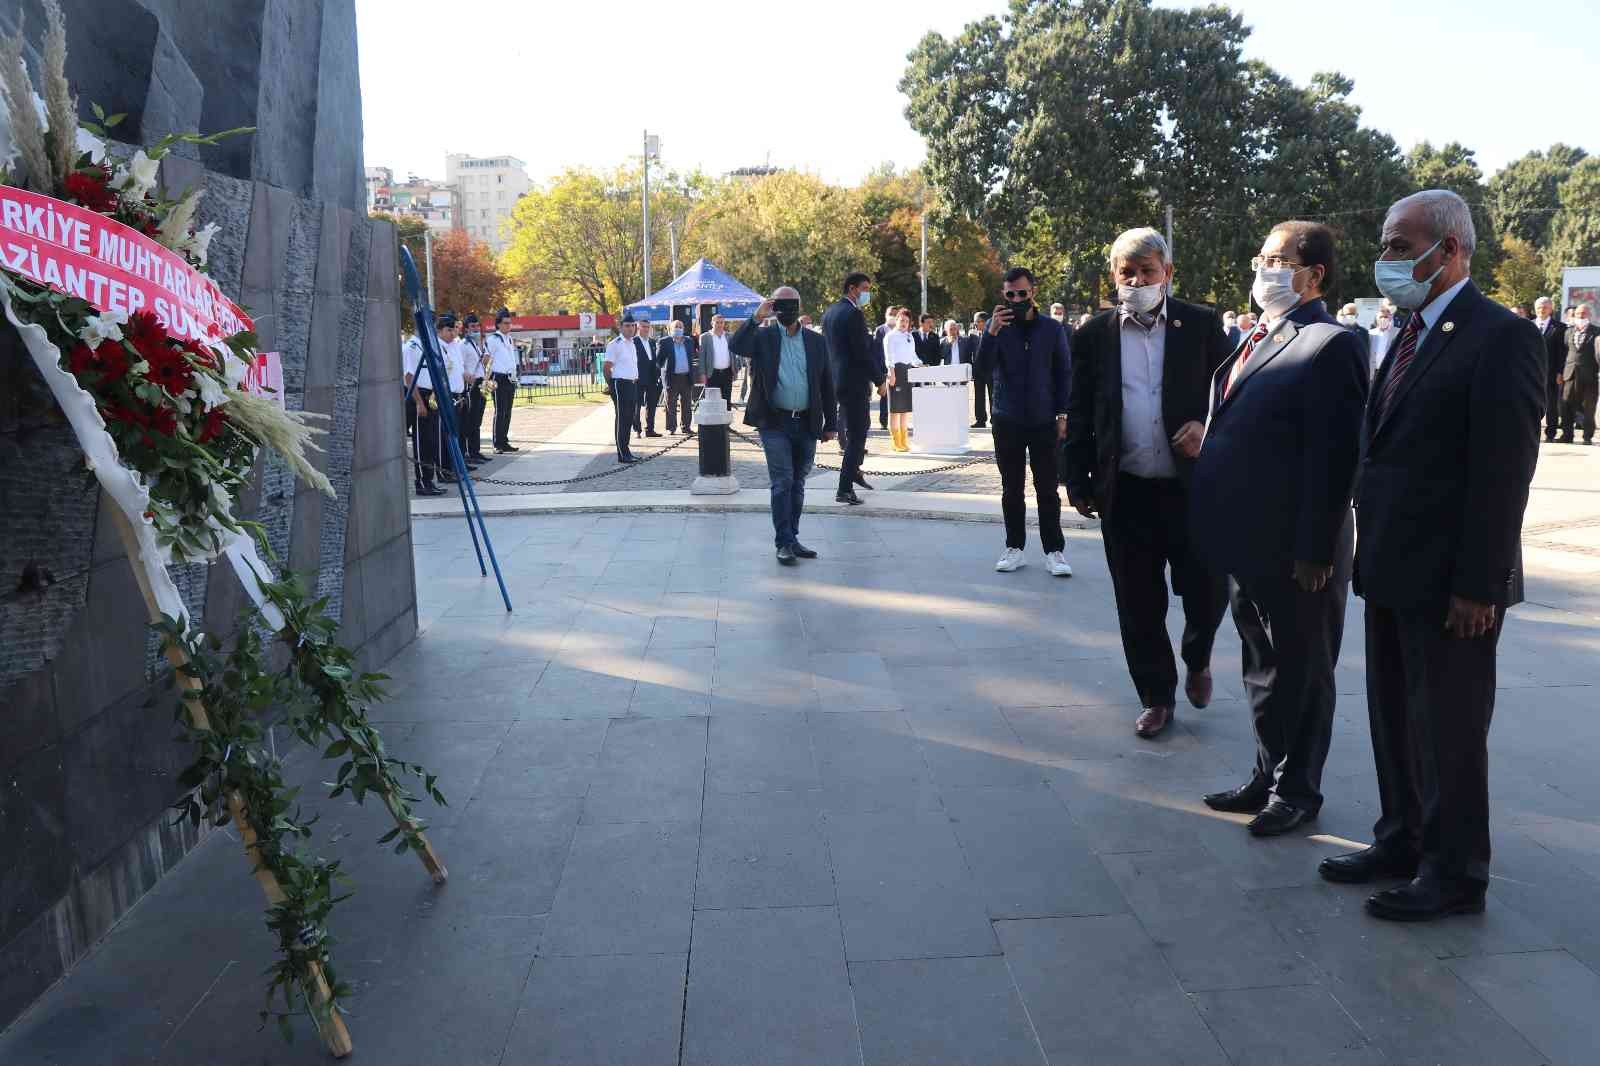 19 Ekim Muhtarlar Günü Gaziantep’te çeşitli etkinliklerle kutlandı #gaziantep